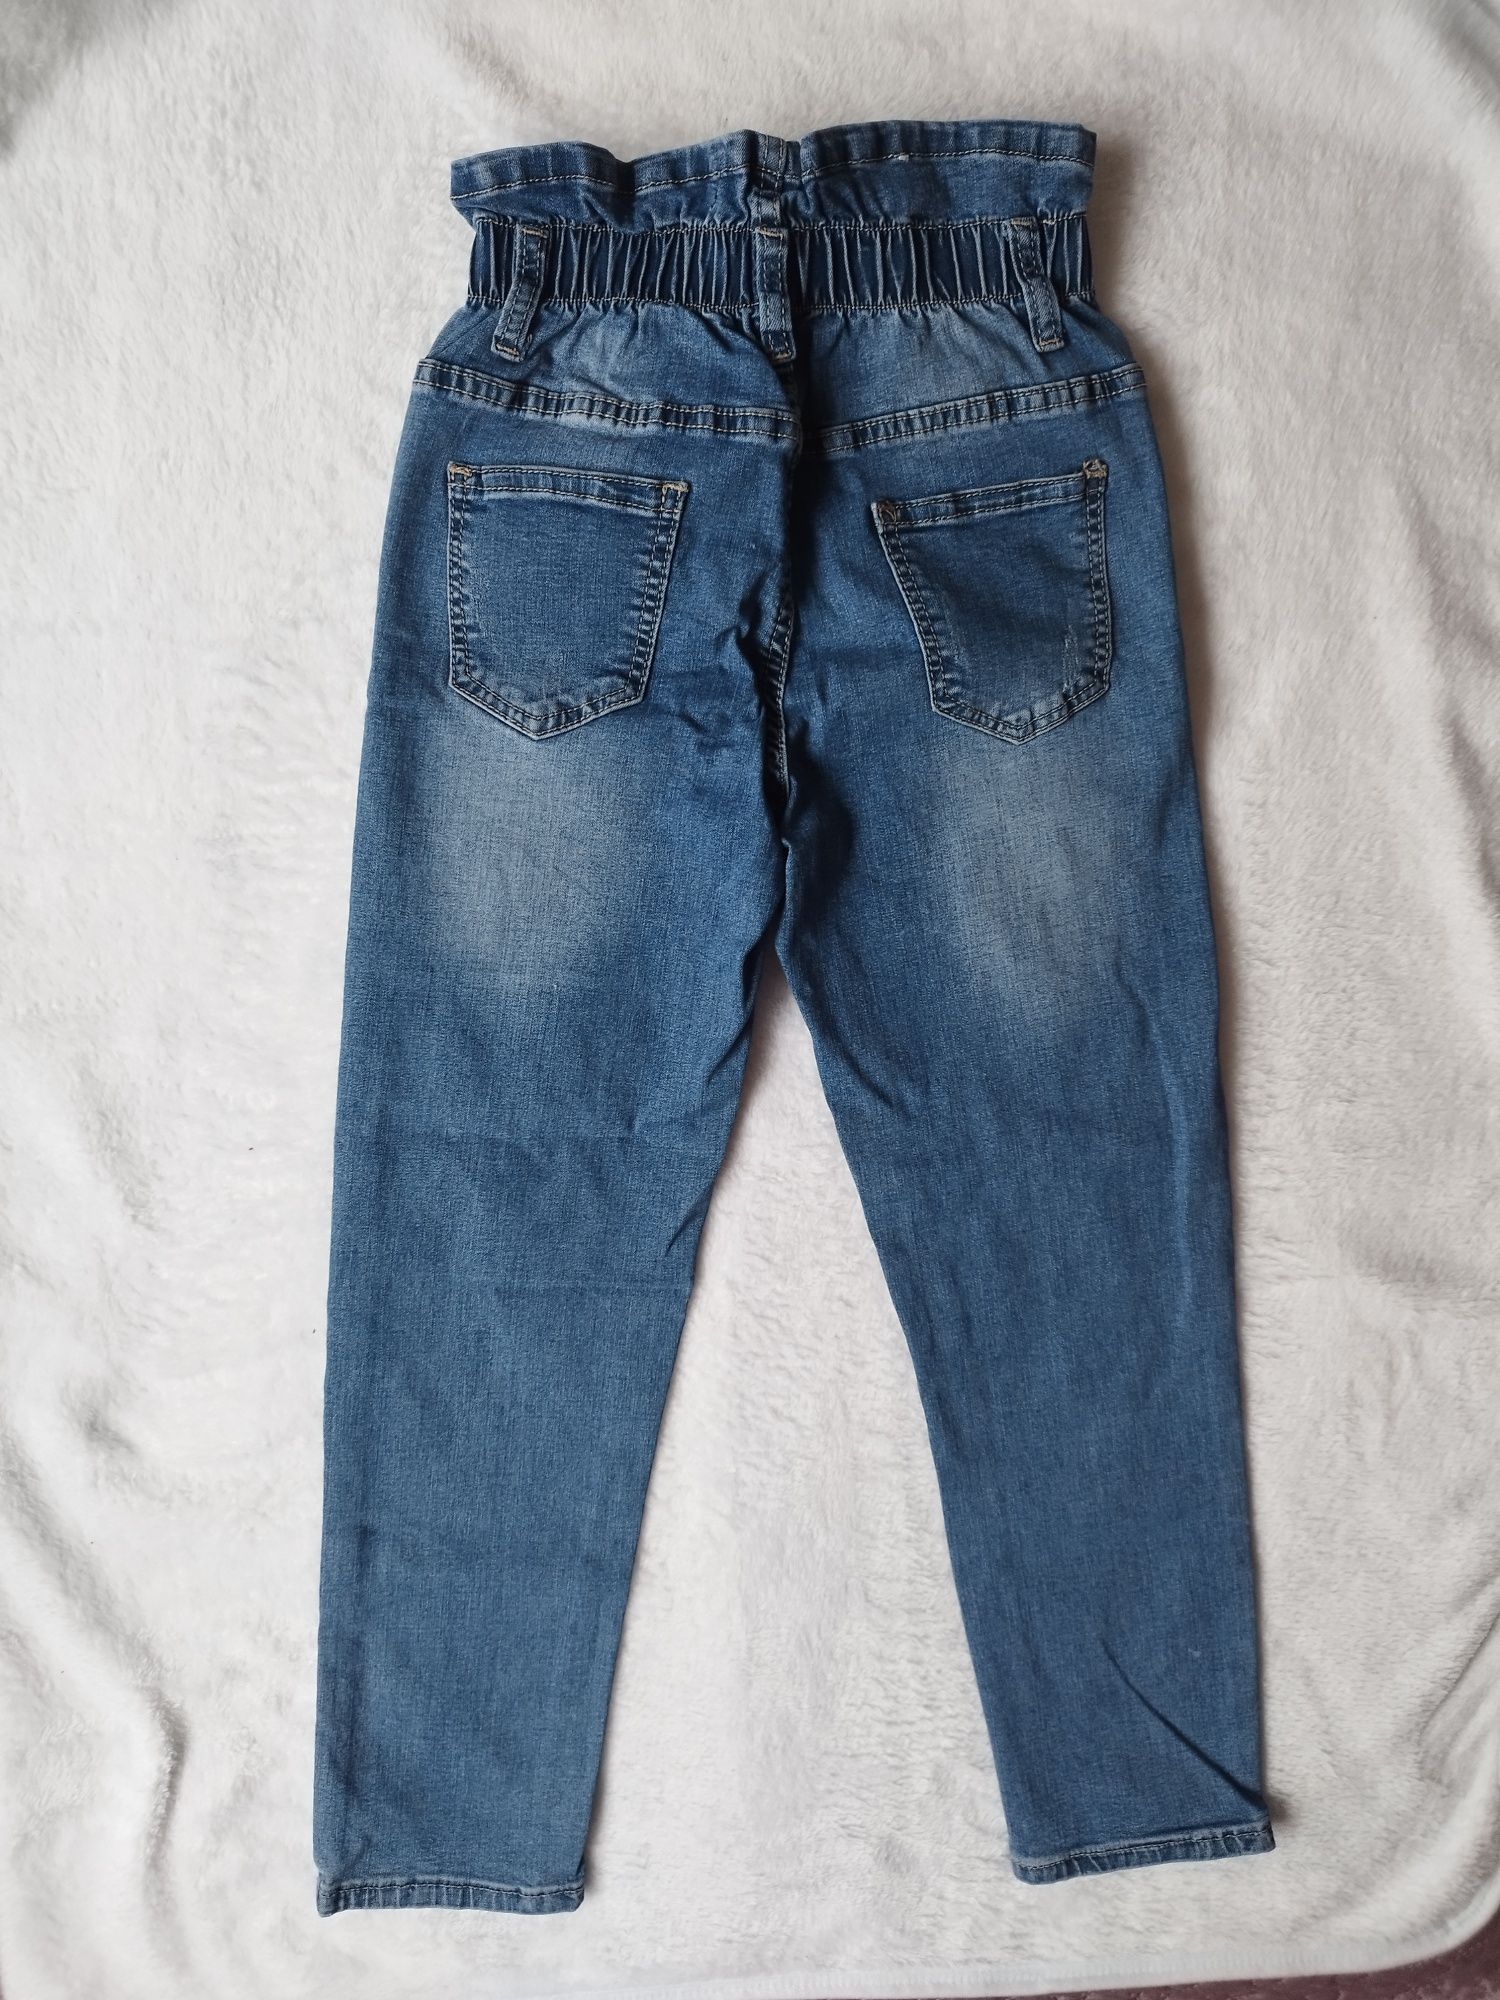 Spodnie miękki jeans r. 122 128 guma w pasie wysoki stan  jak nowe !